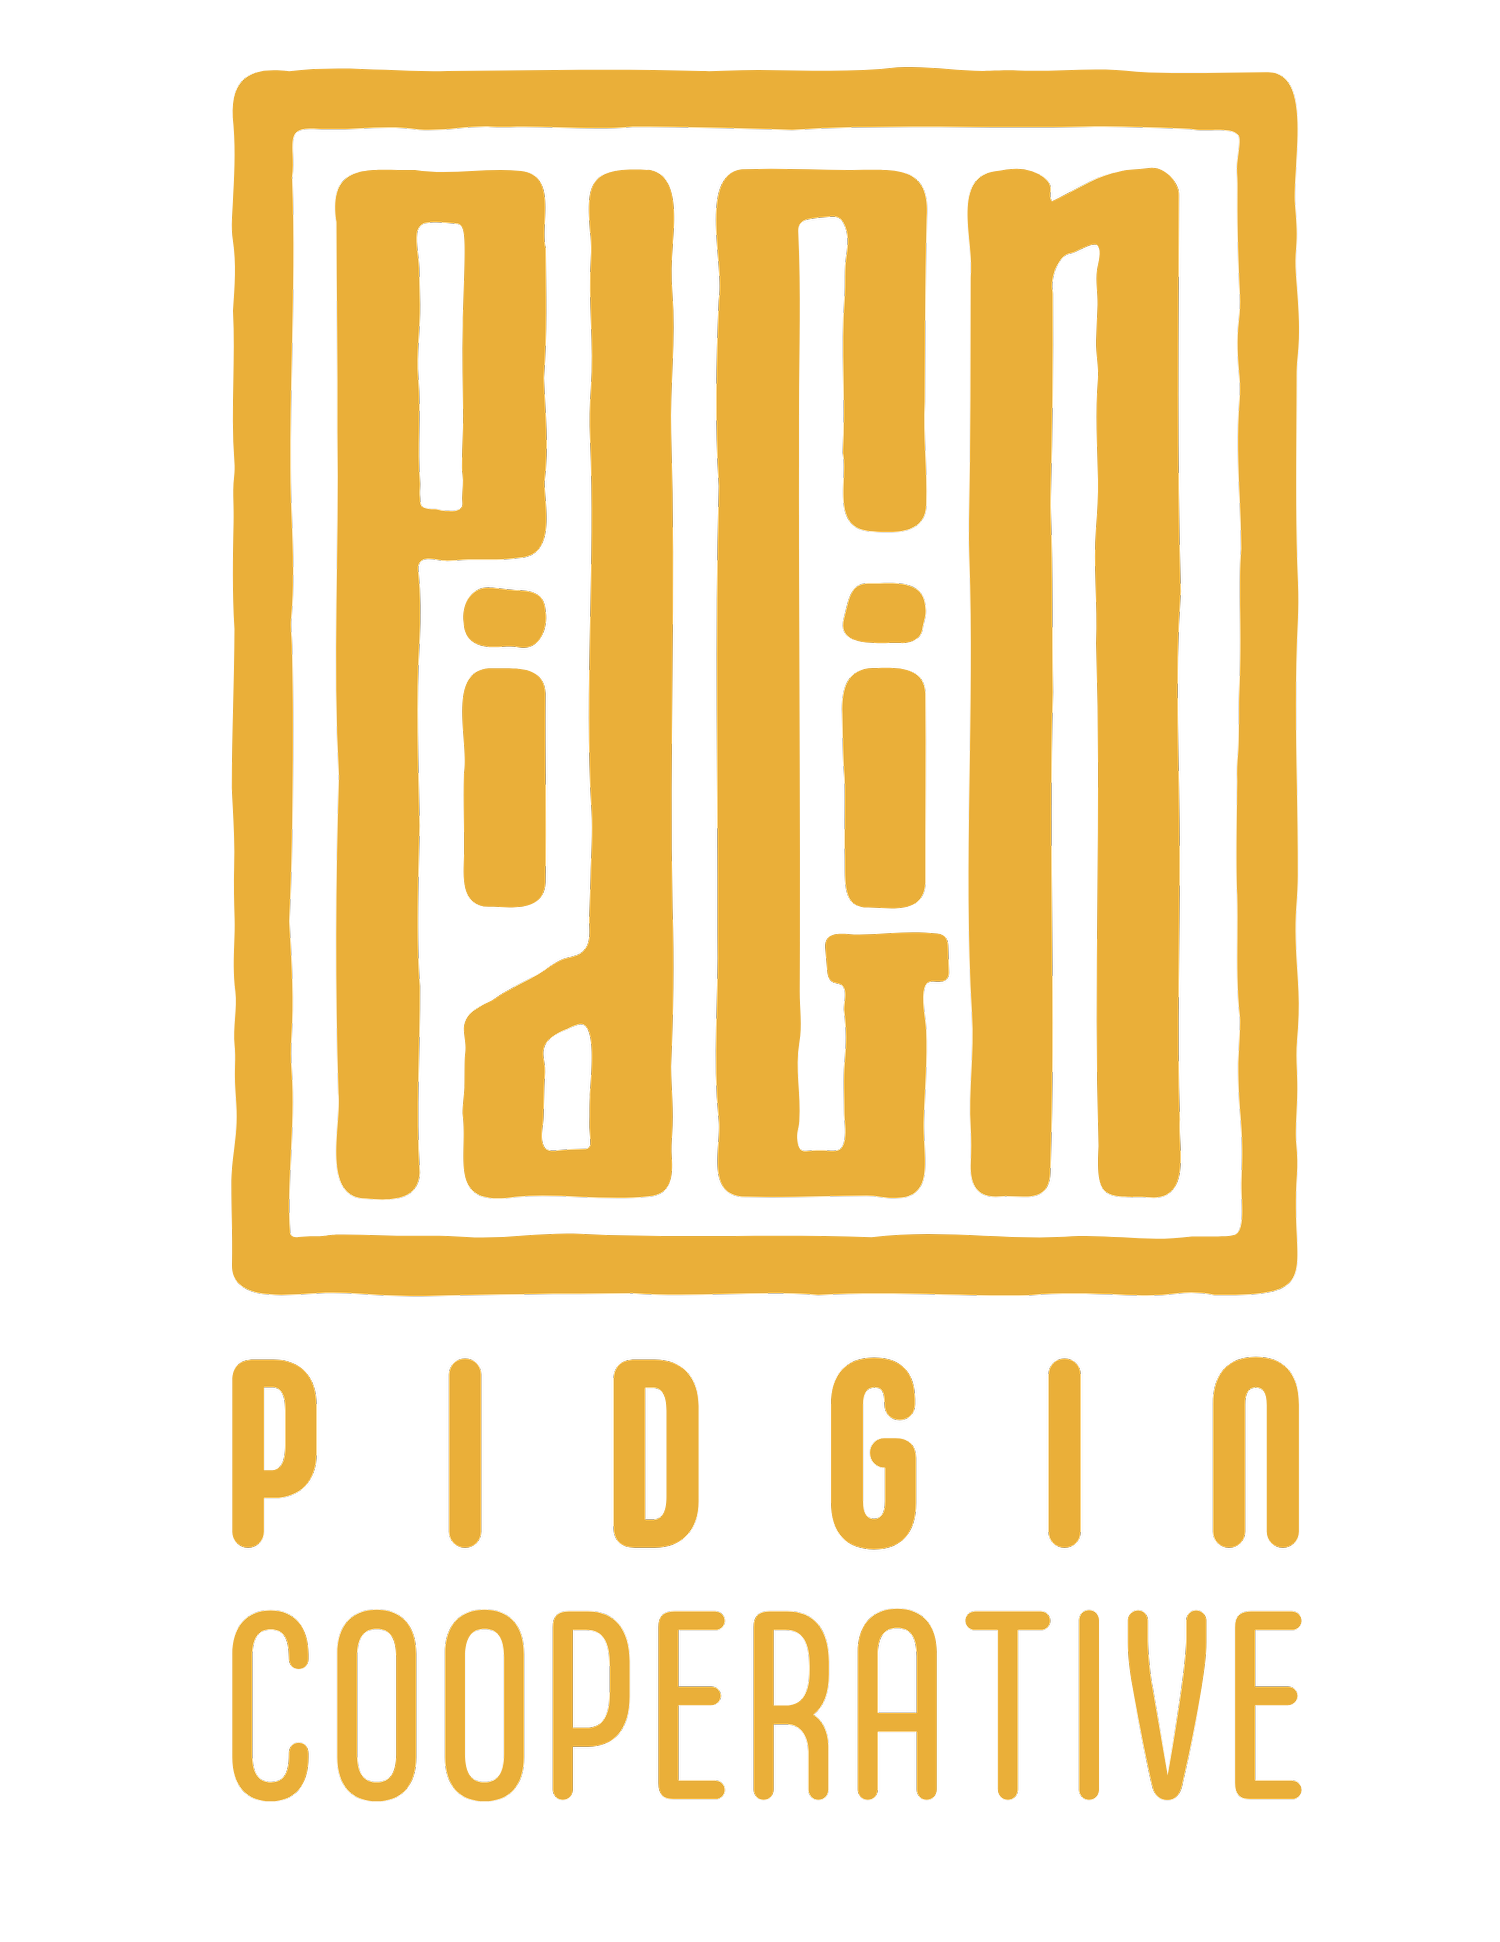 PIDGIN COOPERATIVE